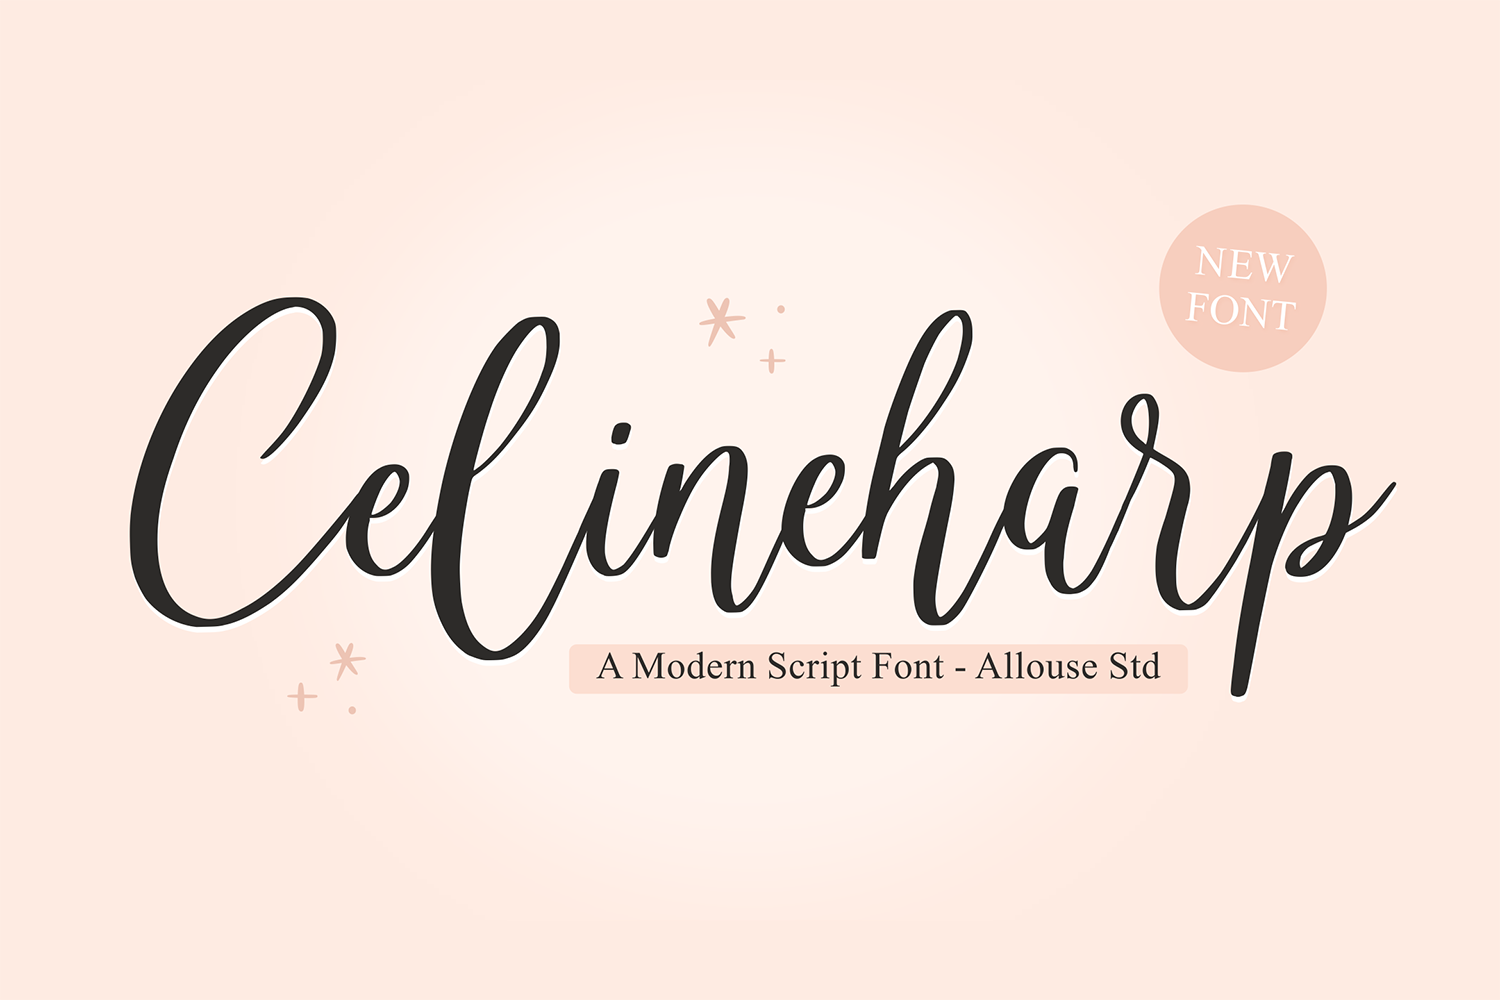 Celineharp Free Font